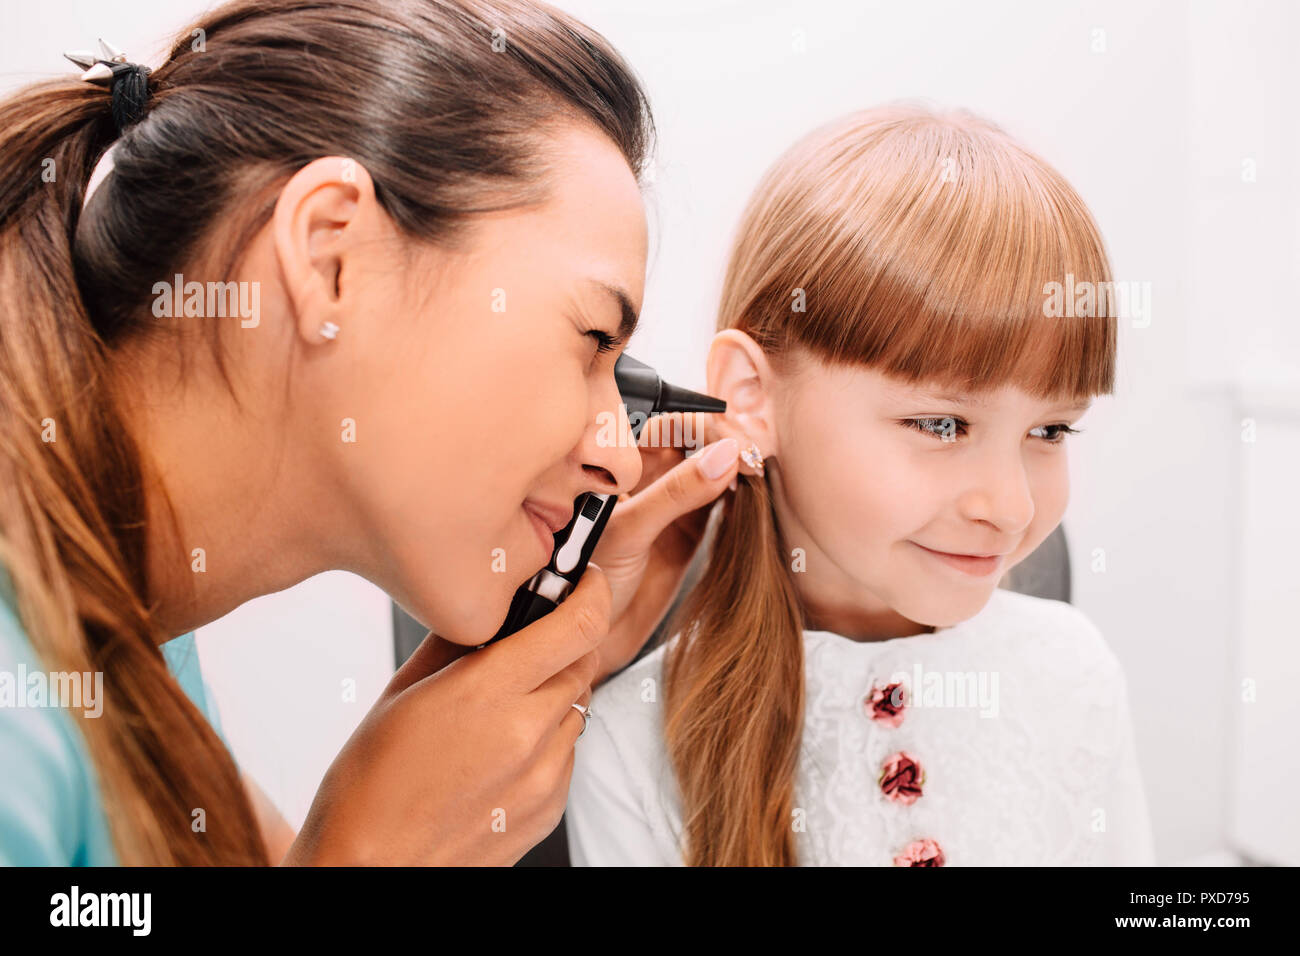 Smiling doctor examining child ear using Otoscope Stock Photo